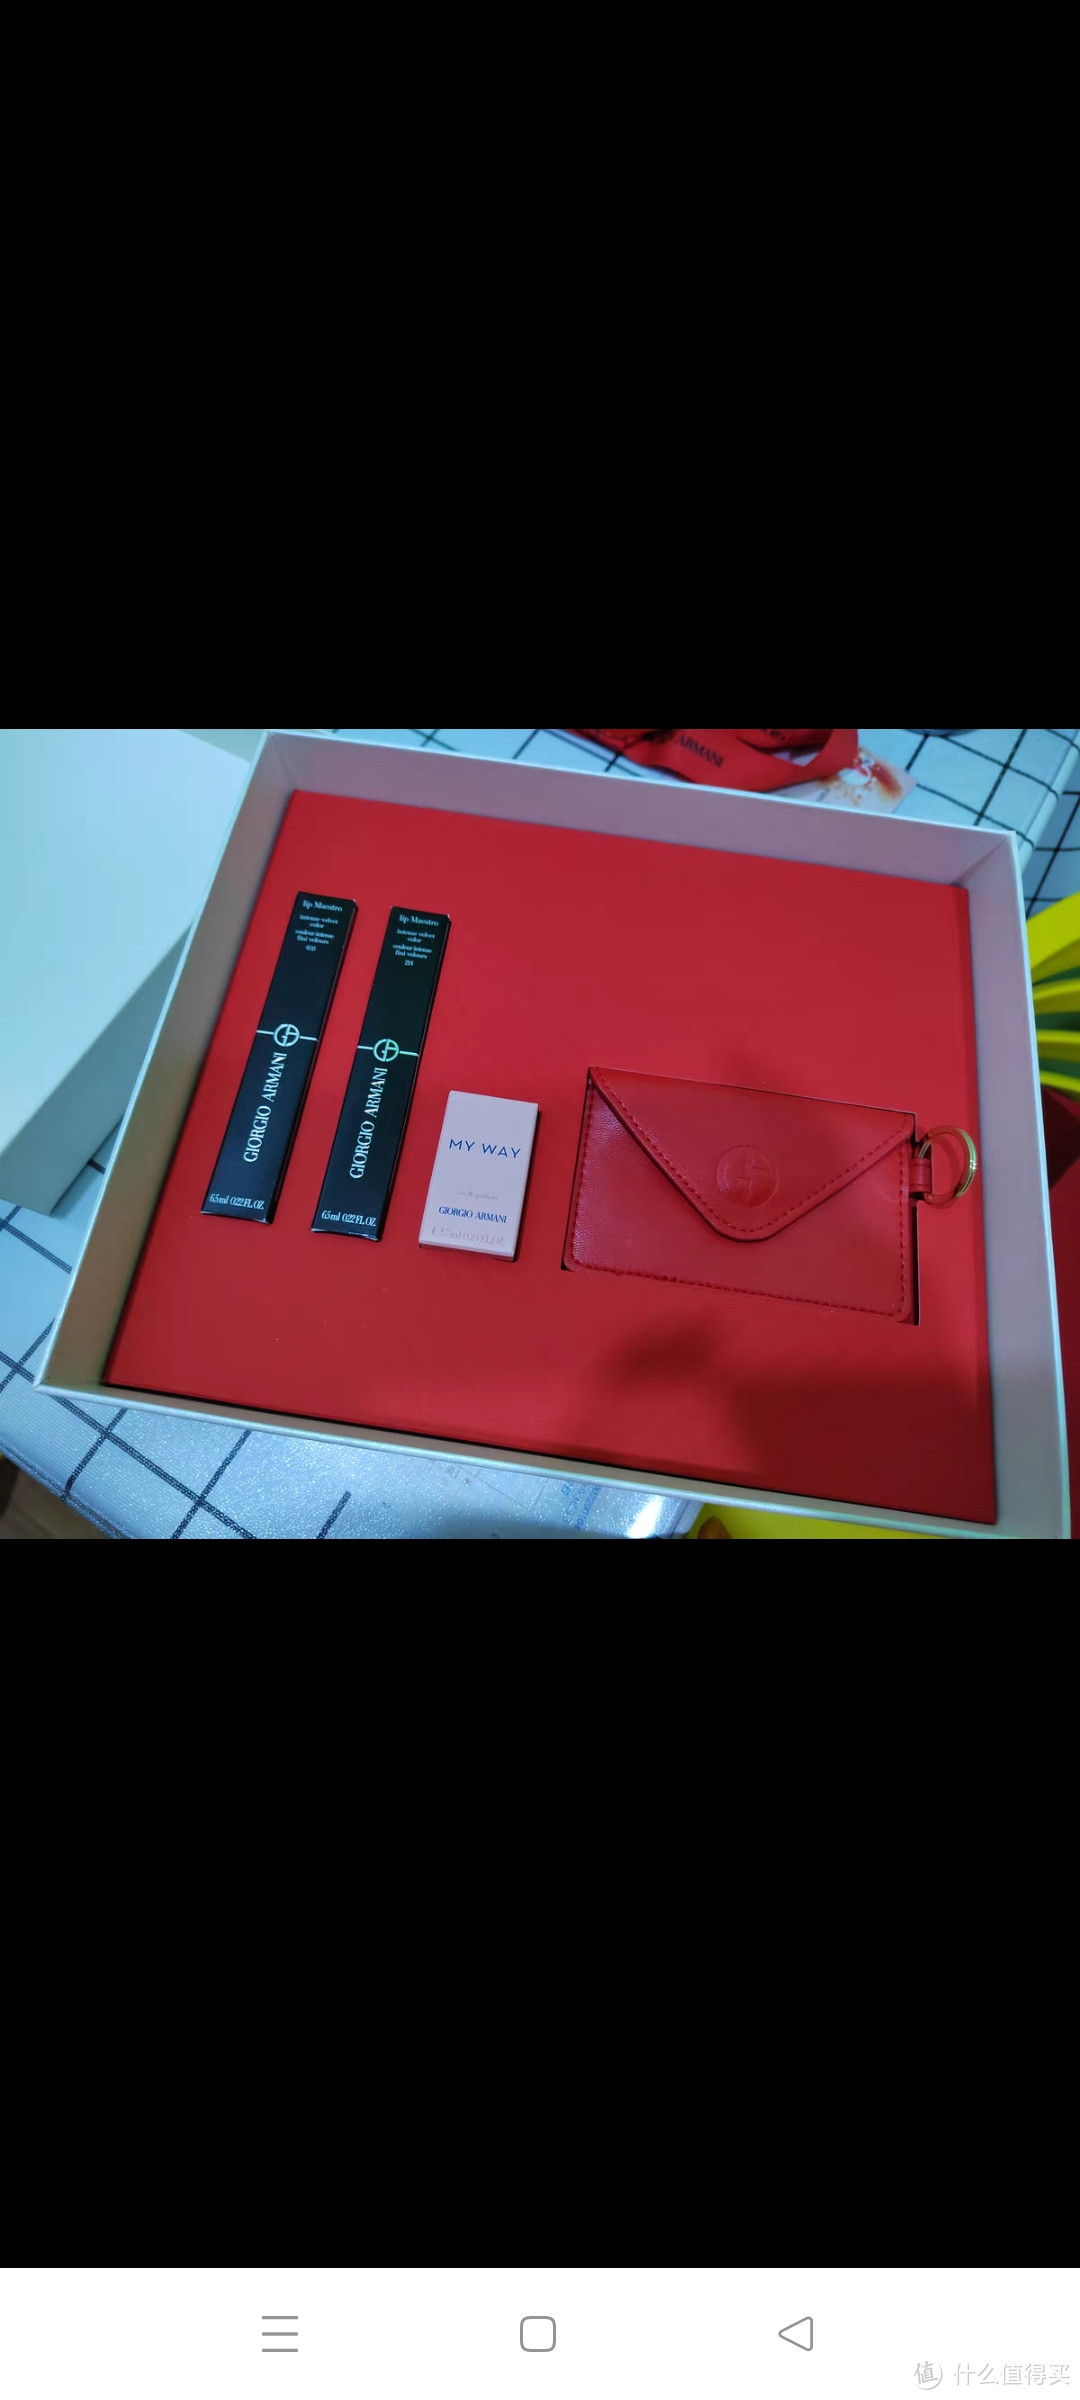 【520礼物】阿玛尼红管2支礼盒红管唇釉明星爆款口红套装